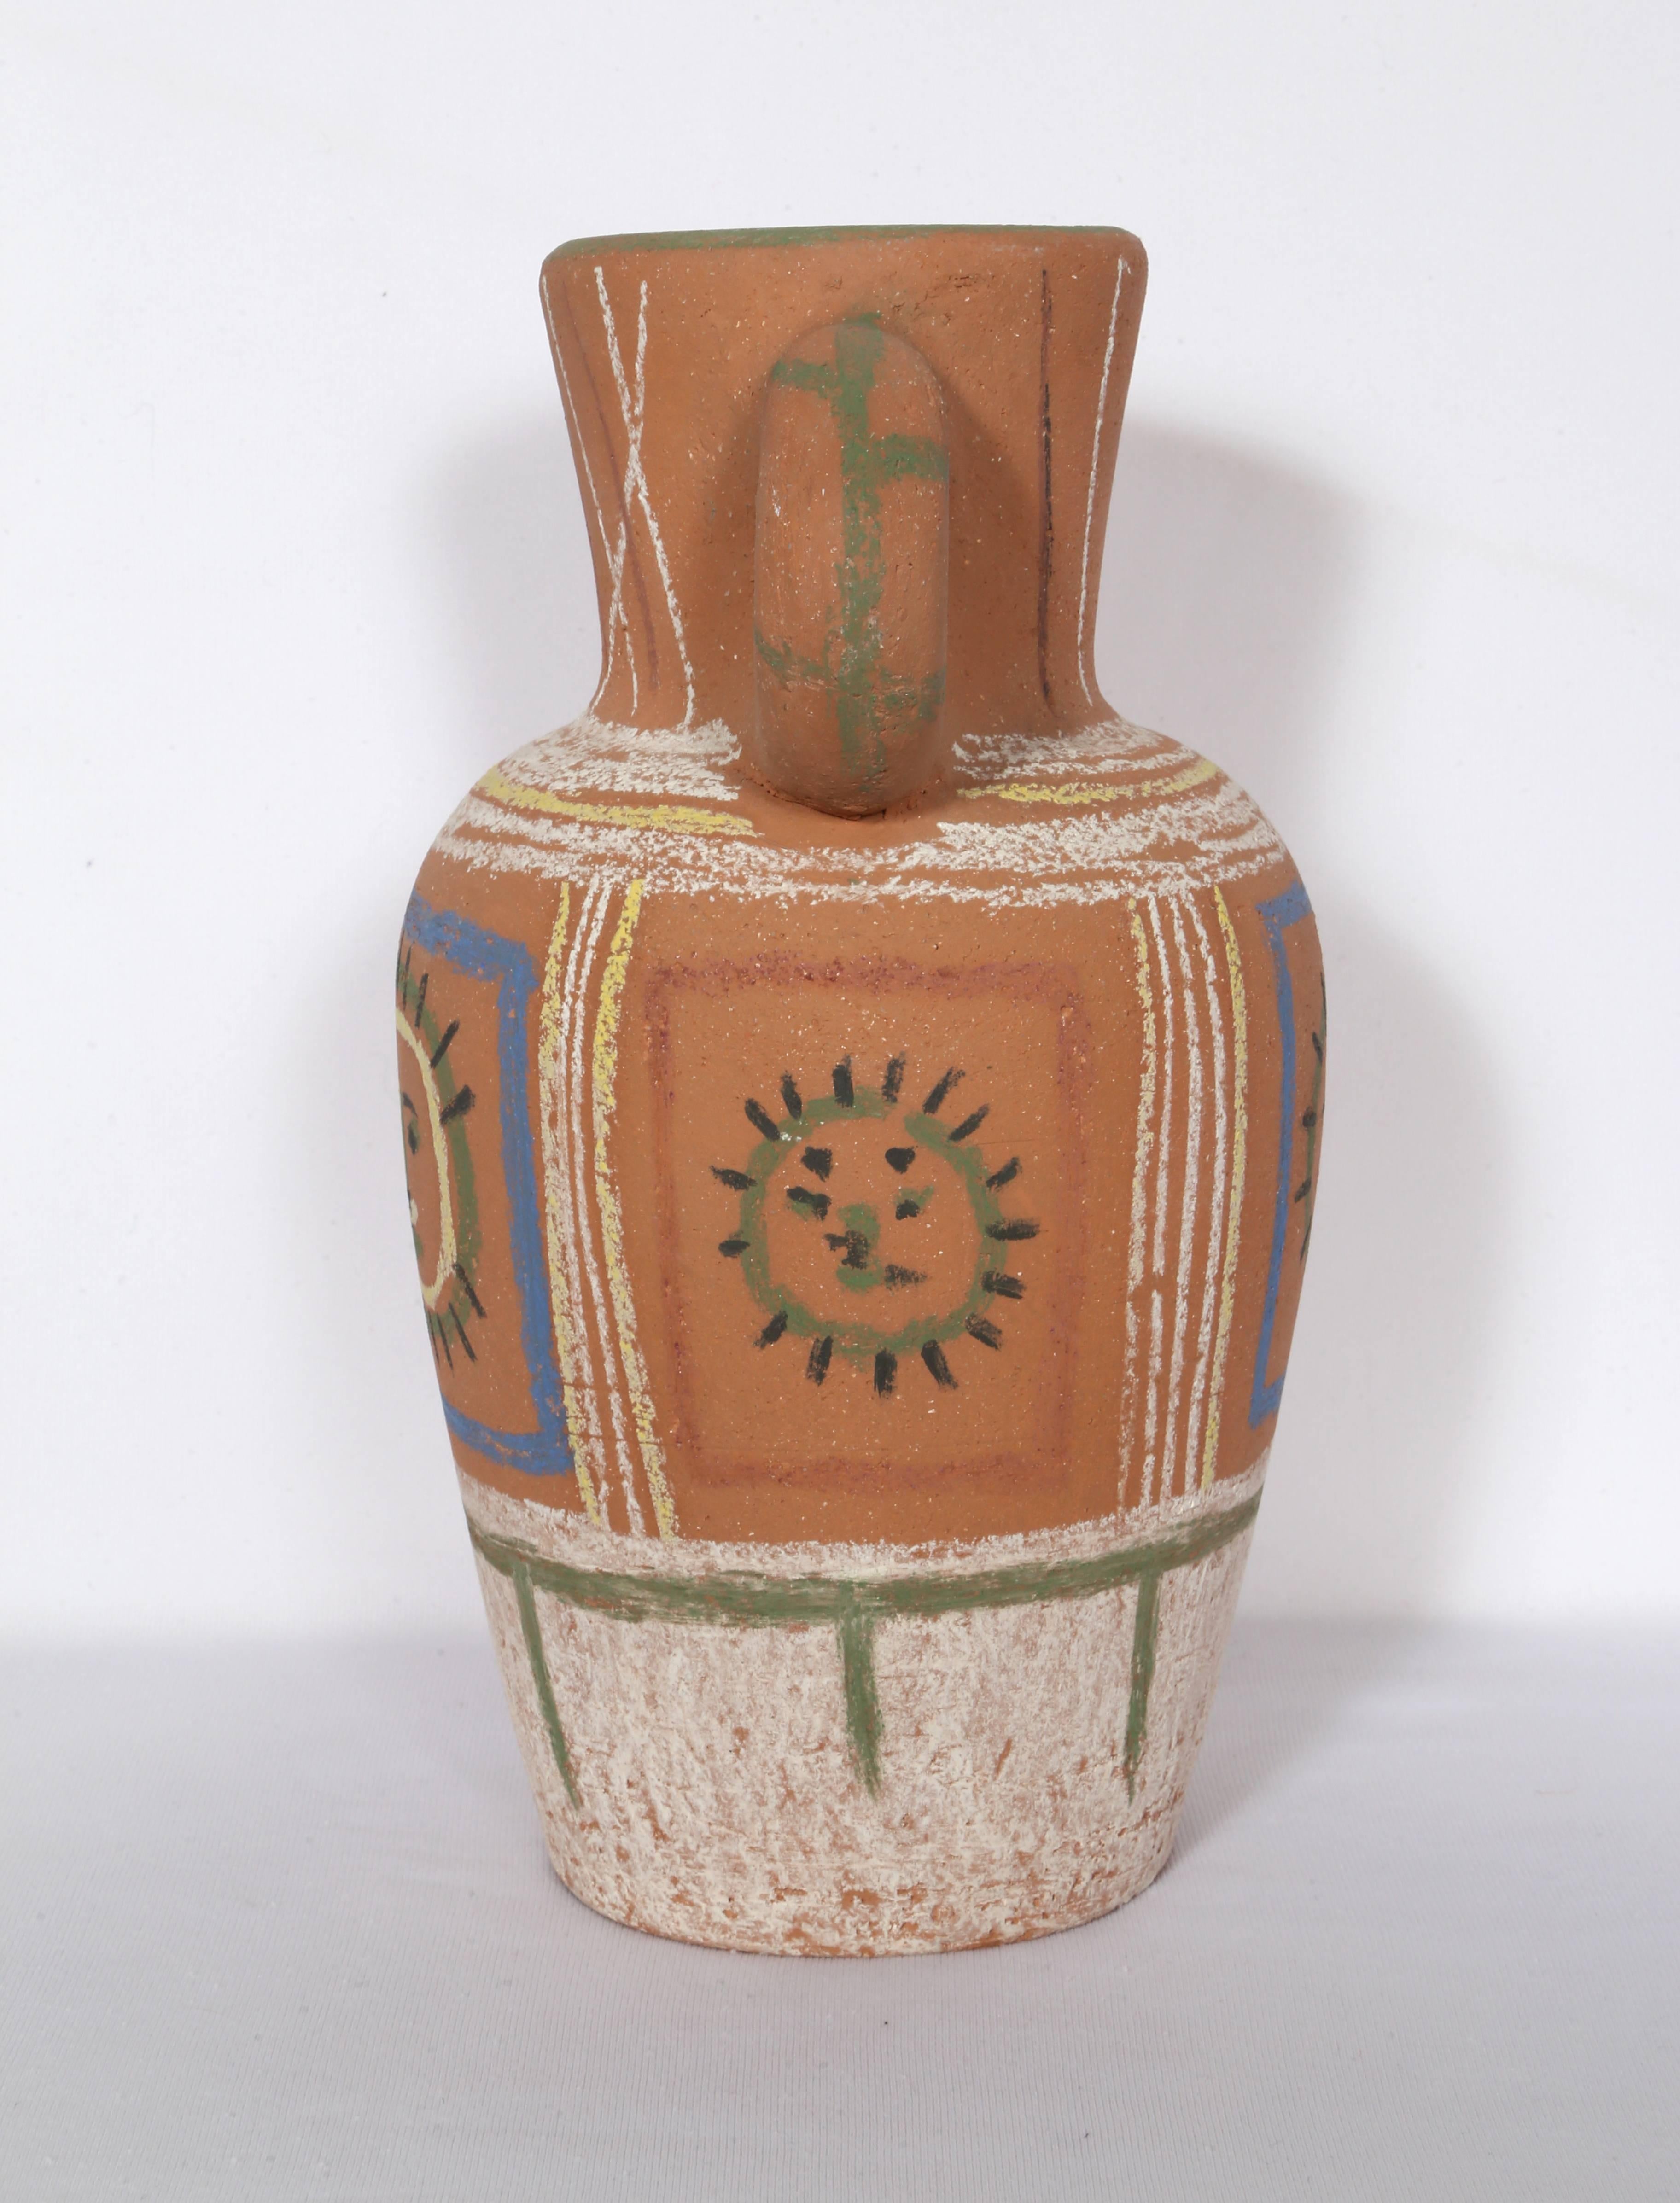 Vase avec Decoration Pastel (Vase with Pastel Decorations), by Pablo Picasso For Sale 3